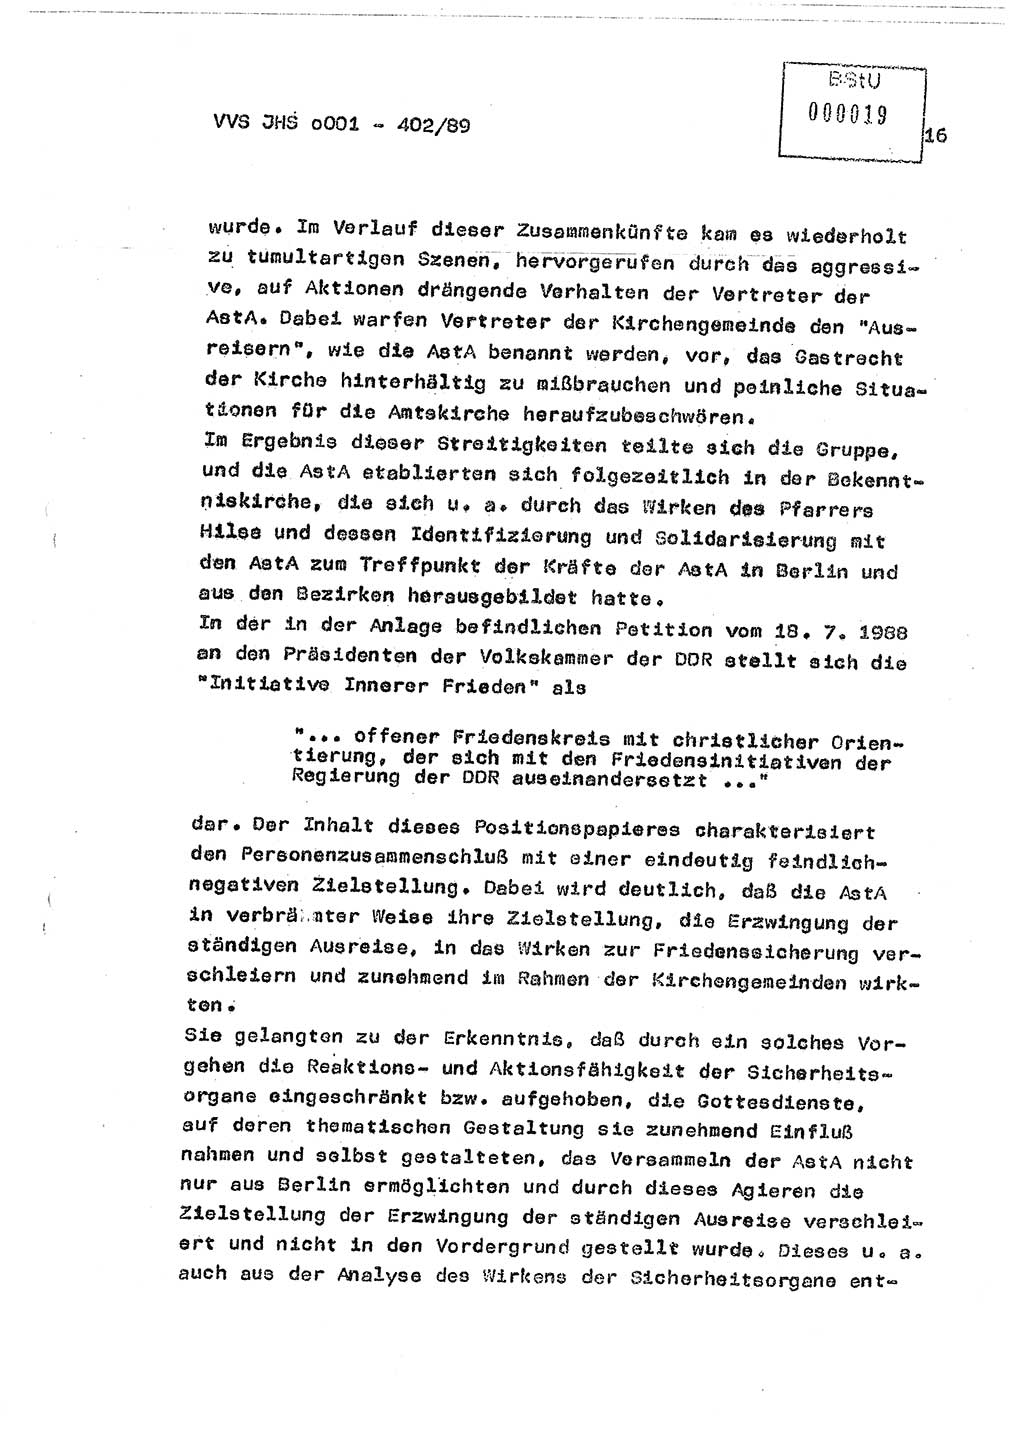 Diplomarbeit Major Günter Müller (HA Ⅸ/9), Ministerium für Staatssicherheit (MfS) [Deutsche Demokratische Republik (DDR)], Juristische Hochschule (JHS), Vertrauliche Verschlußsache (VVS) o001-402/89, Potsdam 1989, Seite 16 (Dipl.-Arb. MfS DDR JHS VVS o001-402/89 1989, S. 16)